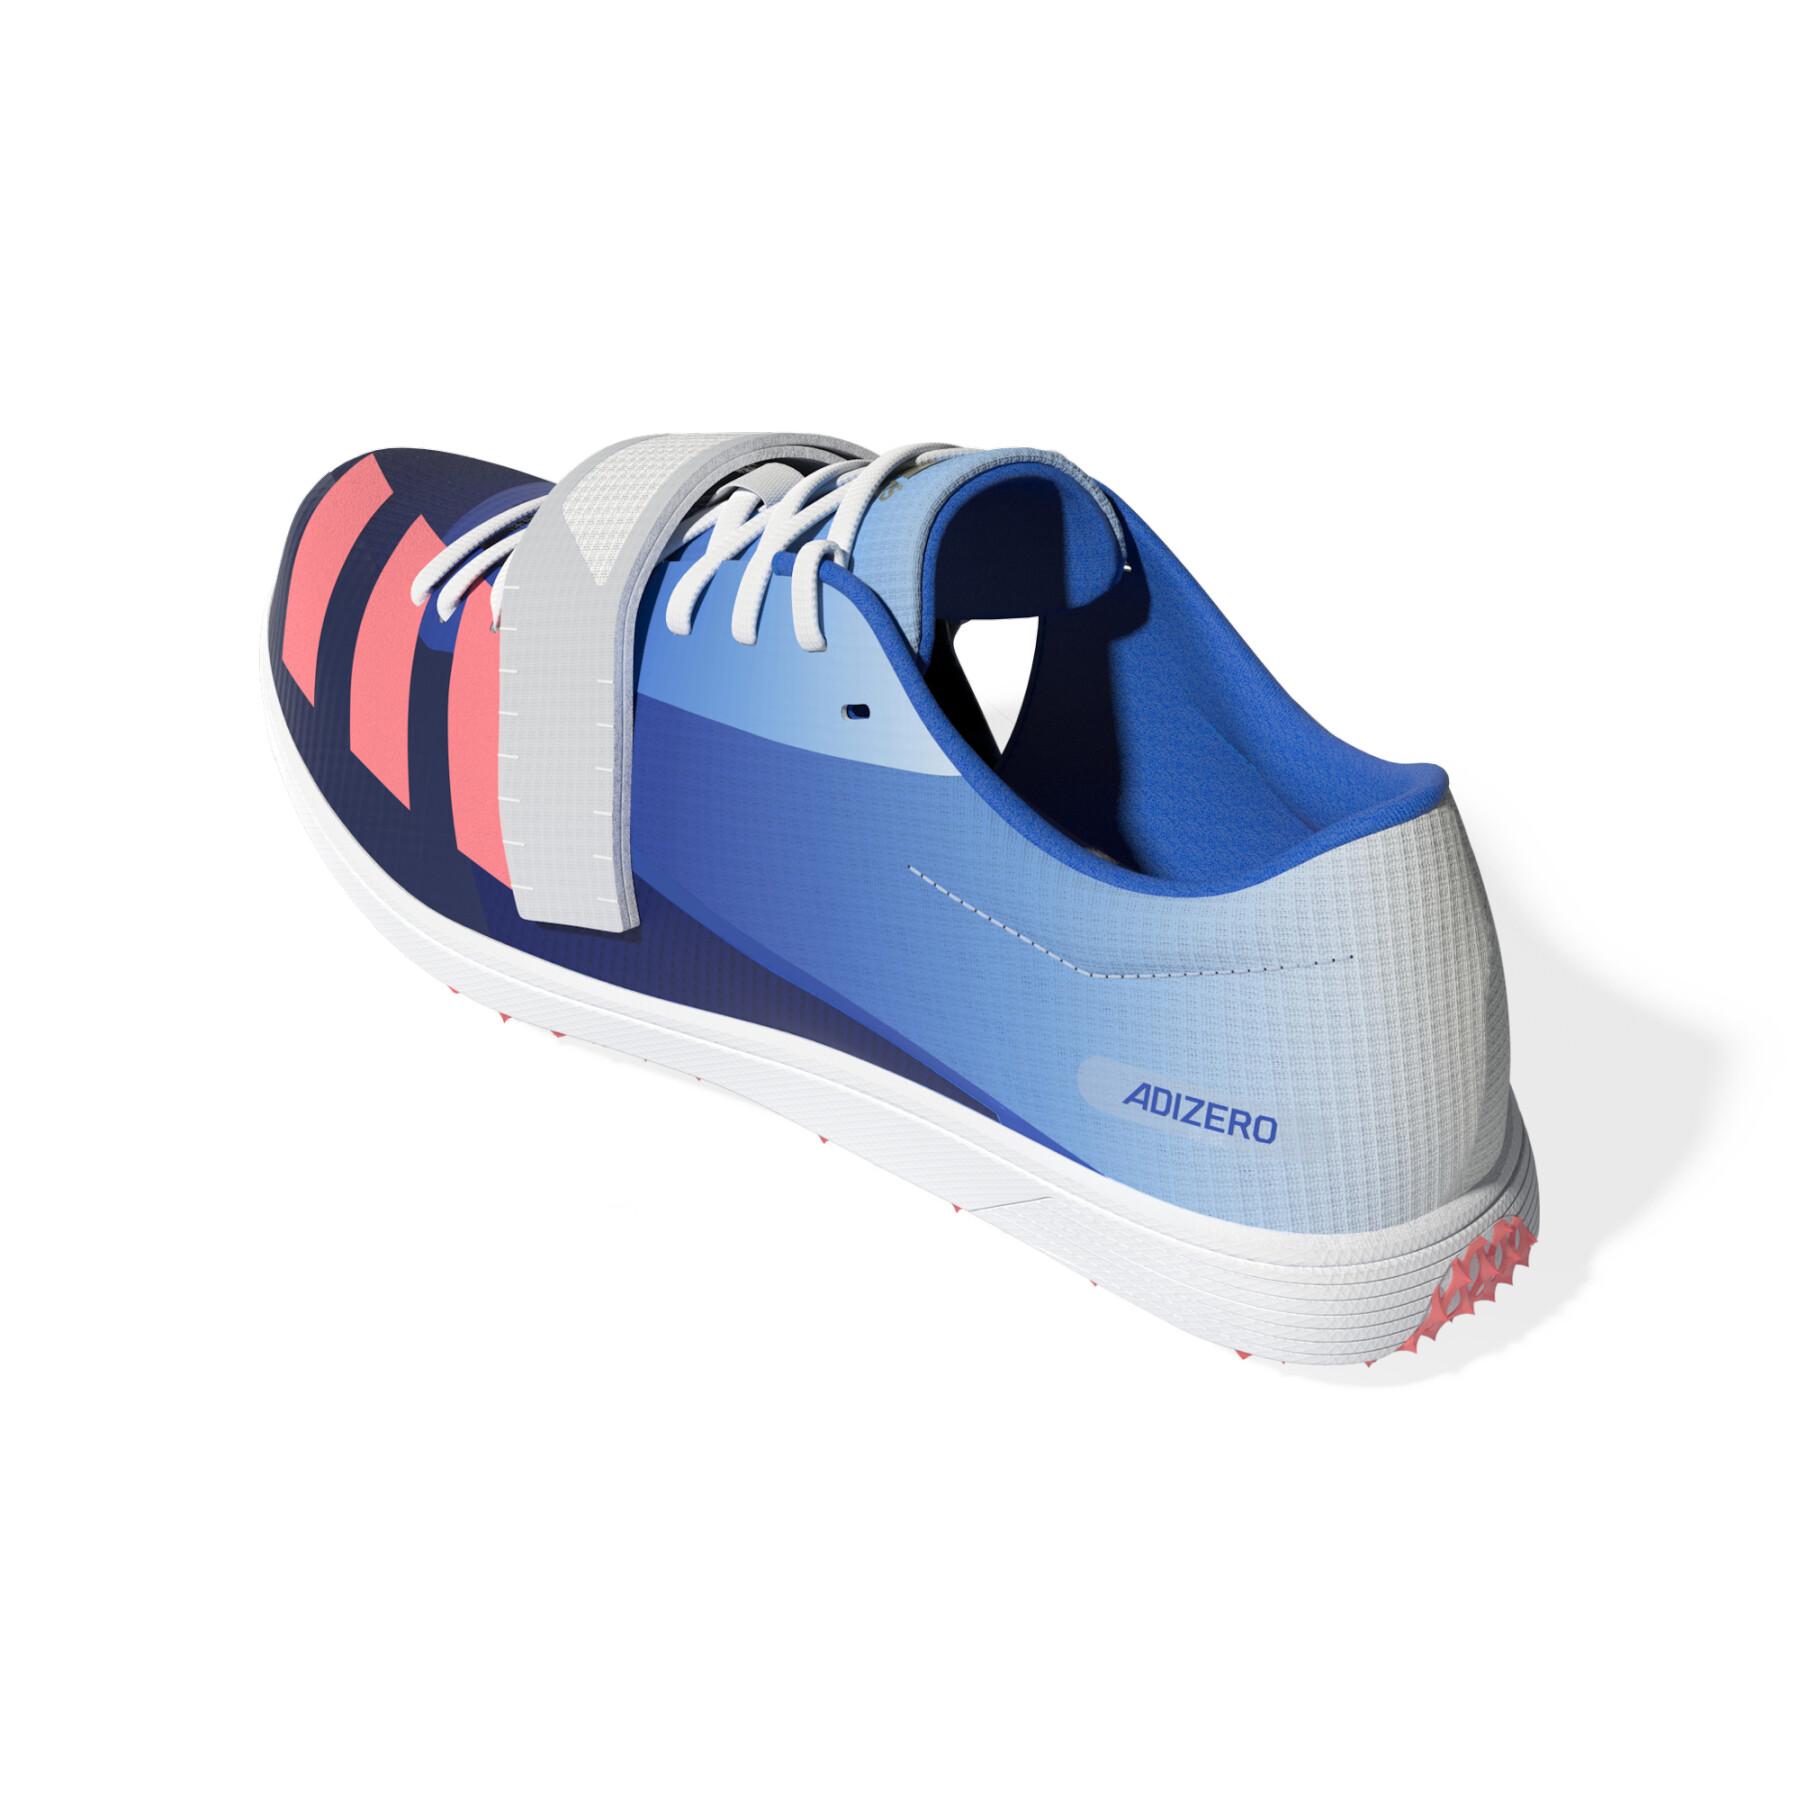 Driesprong- en polsstokhoogspringschoenen adidas Adizero